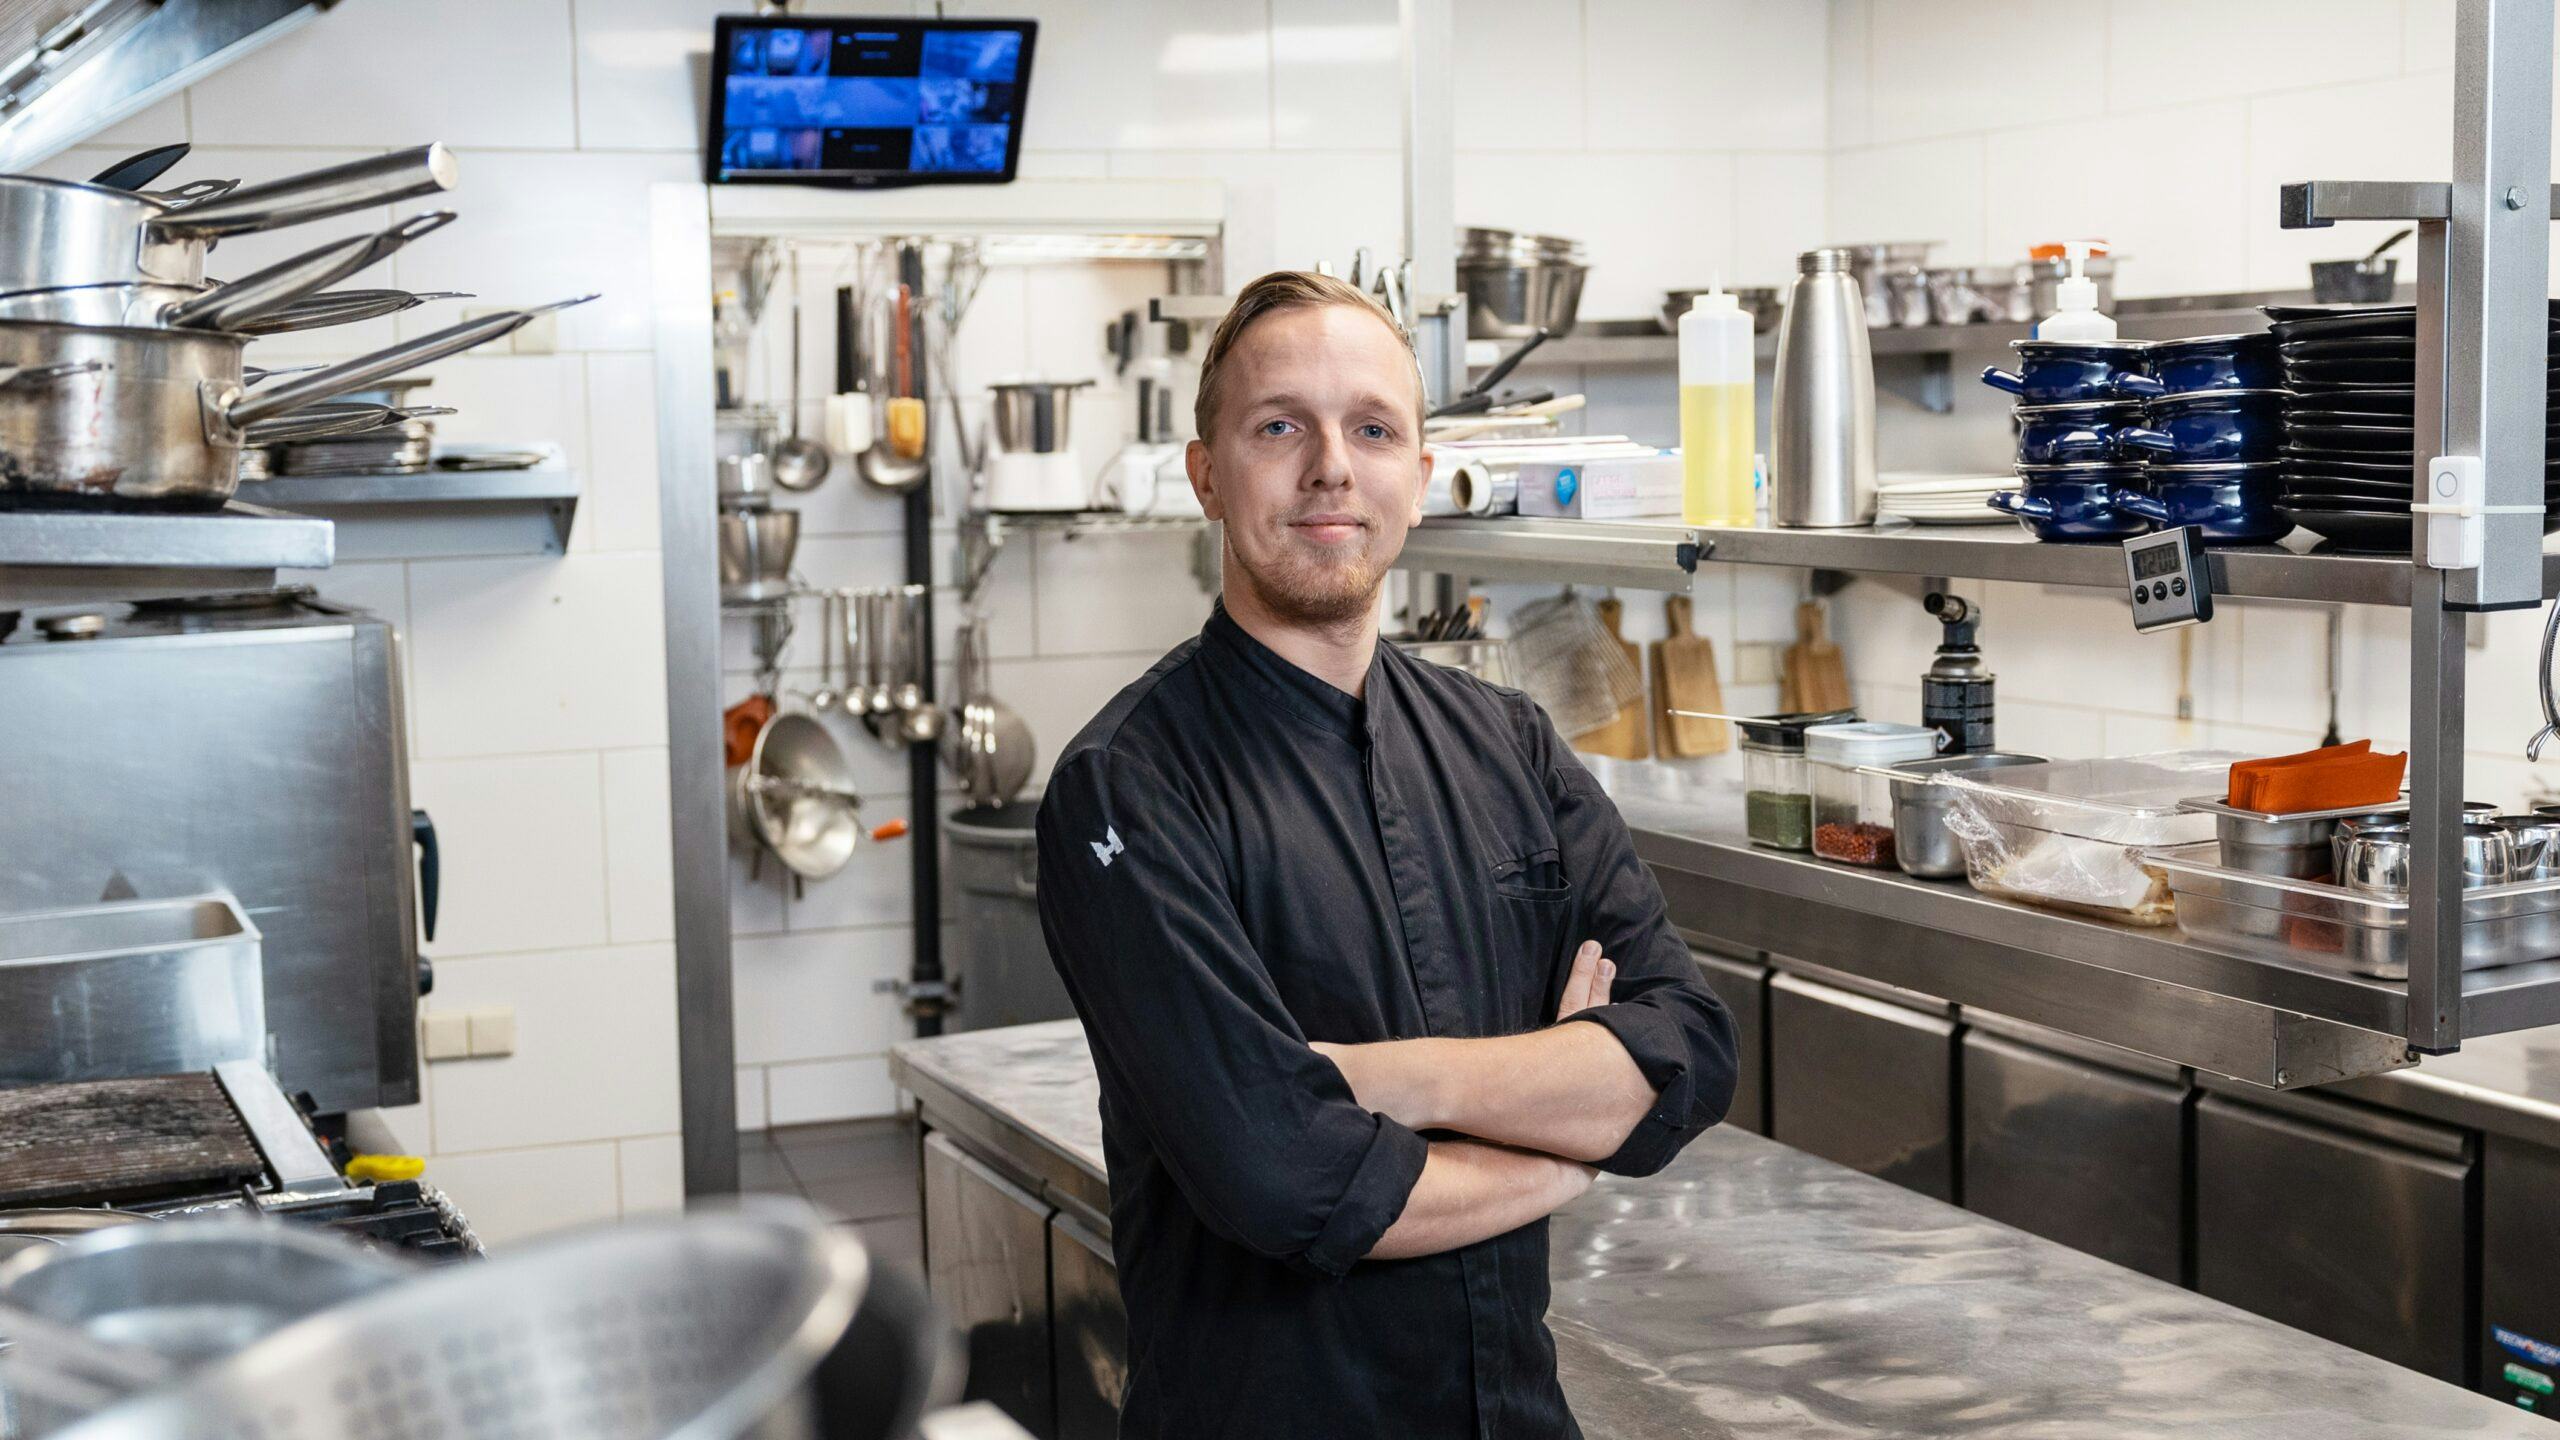 Olivier Koster helpt met zijn horecaconcept restaurants die kampen met personeelstekort in de keuken.